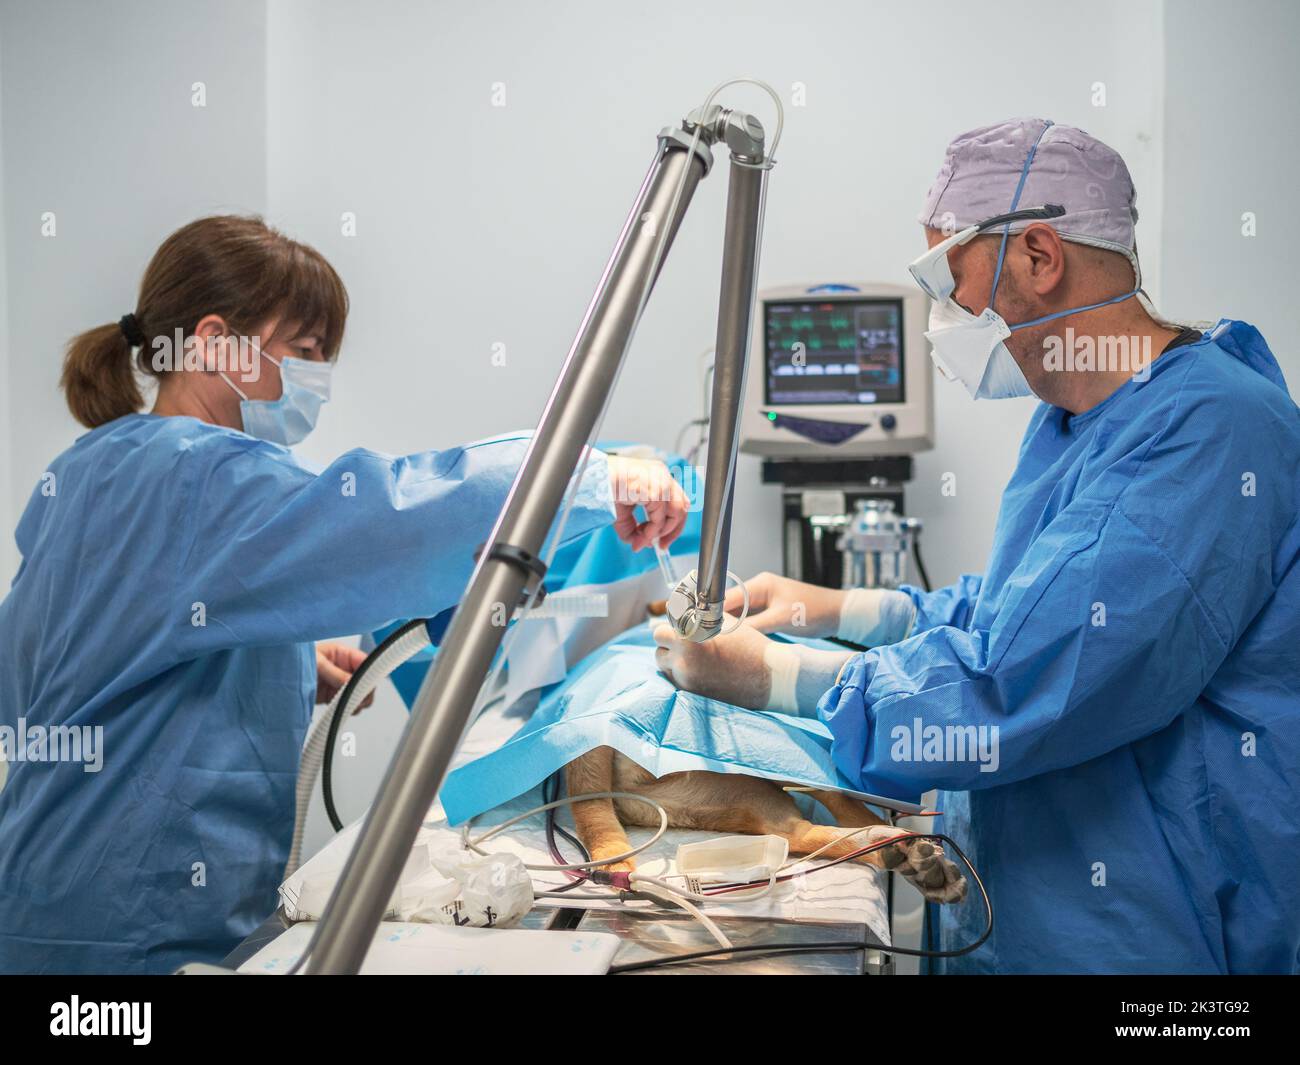 Vista lateral de hombre y mujer en uniforme médico realizando cirugía en perro mientras trabajan juntos en la clínica veterinaria Foto de stock